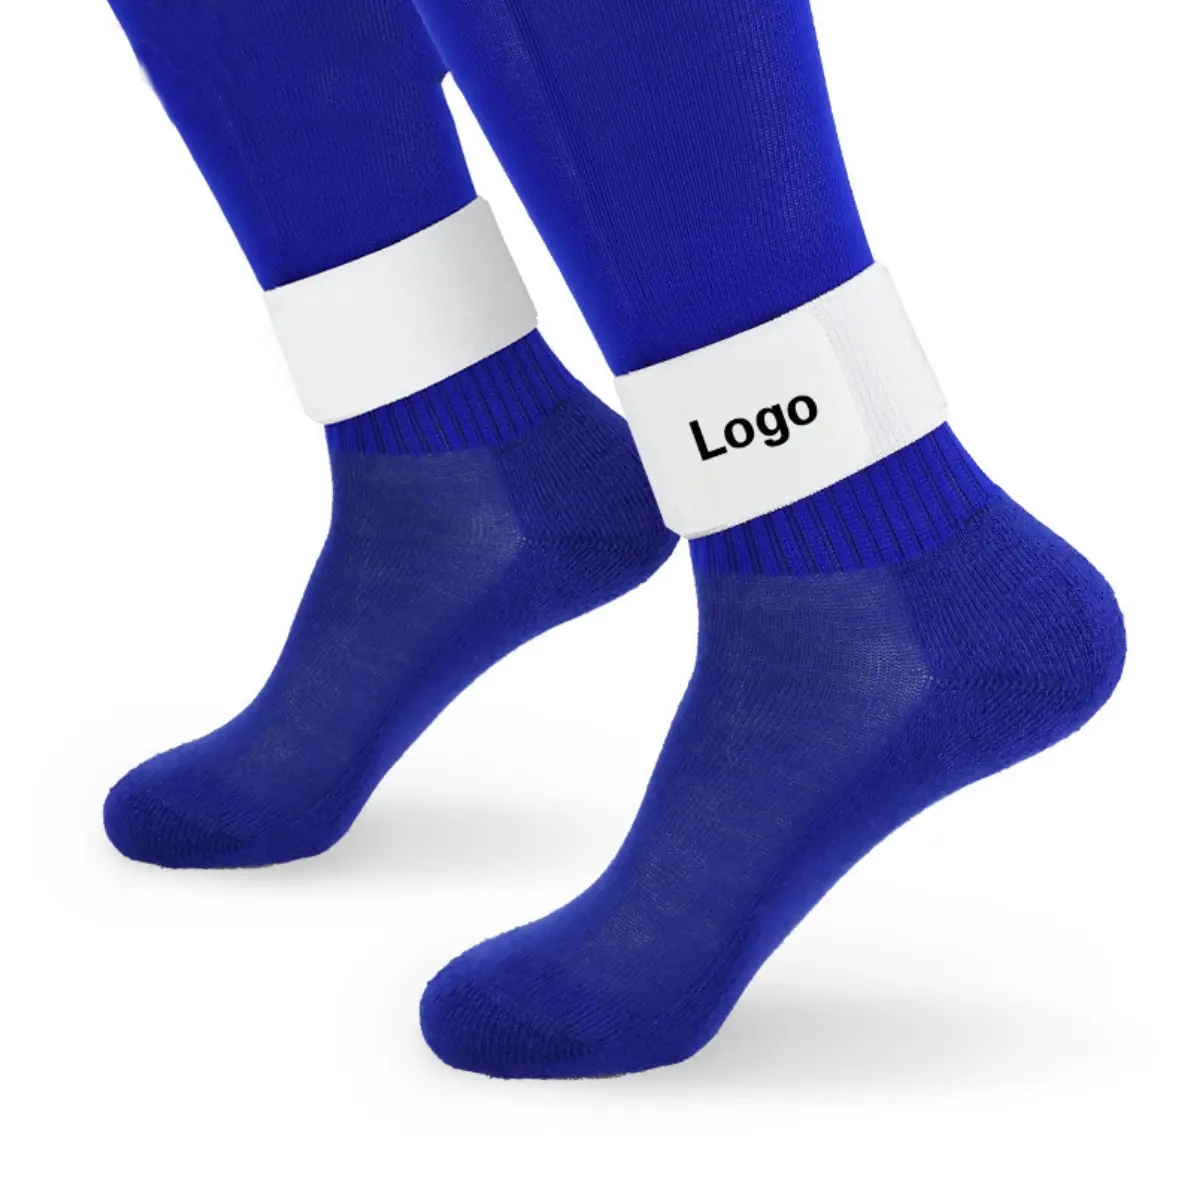 Açık ayarlanabilir boyutu spor malzemeleri bacak sapanlar futbol futbol bacak kayışı guard sabit bant ayak bileği koruma